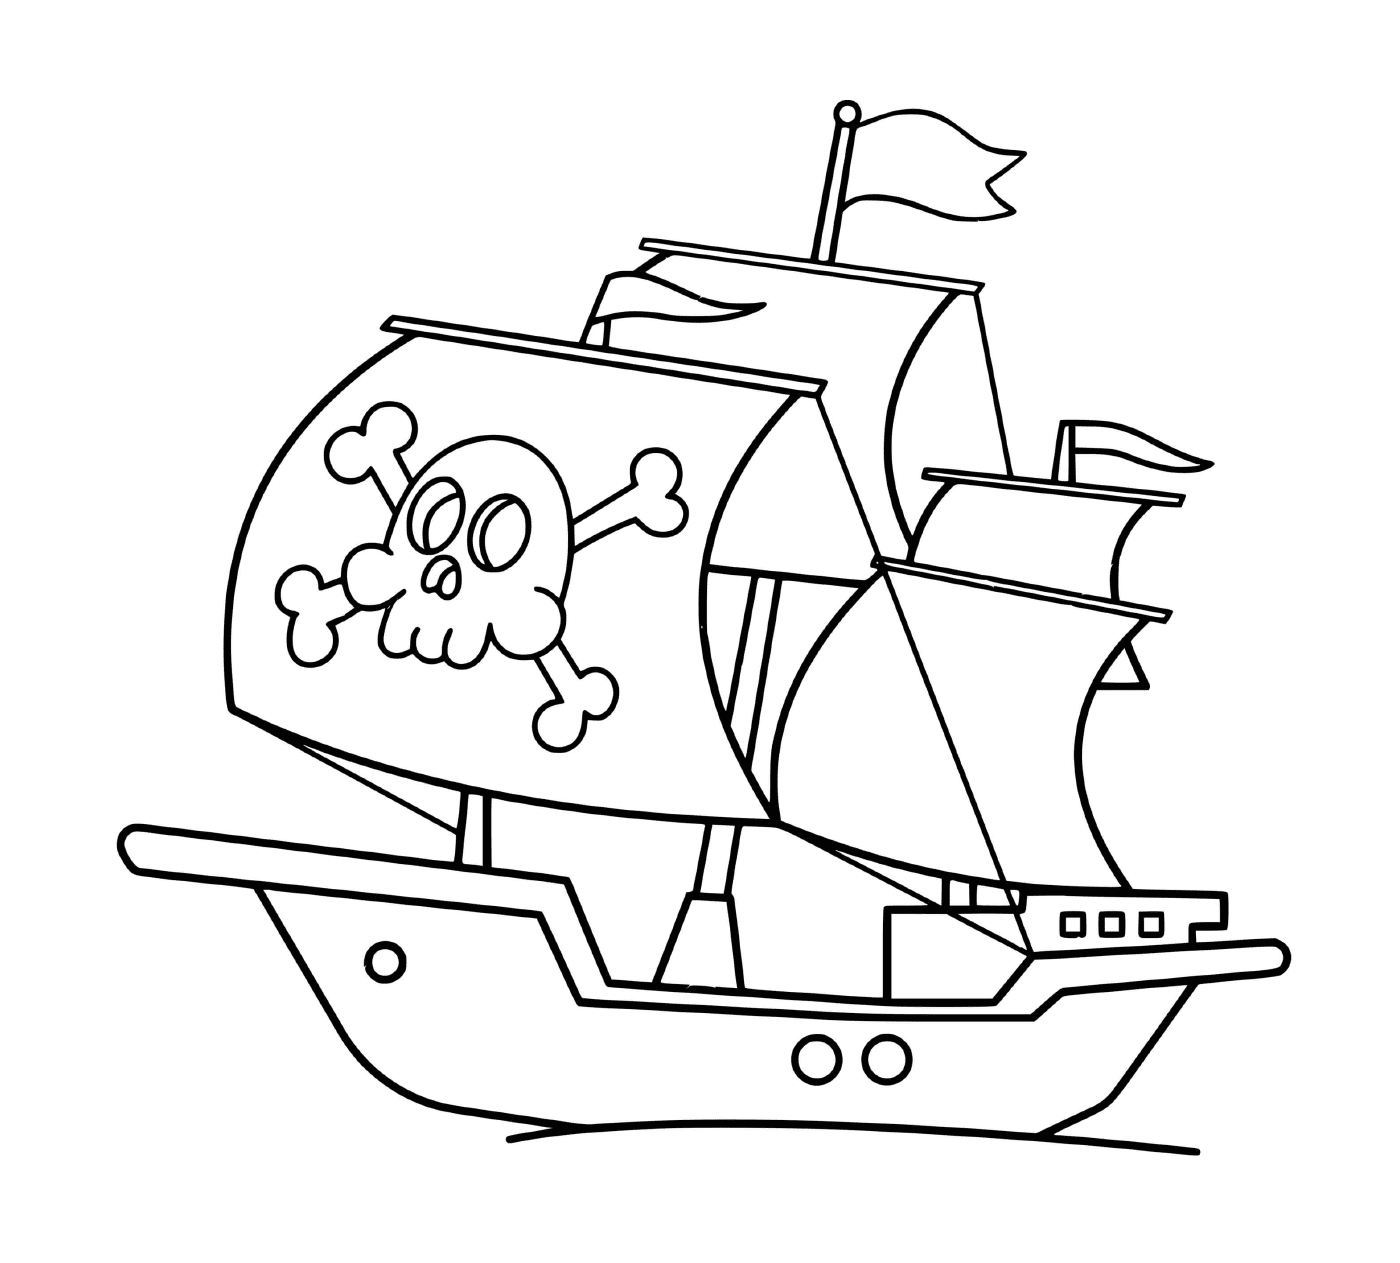  Una semplice barca pirata 